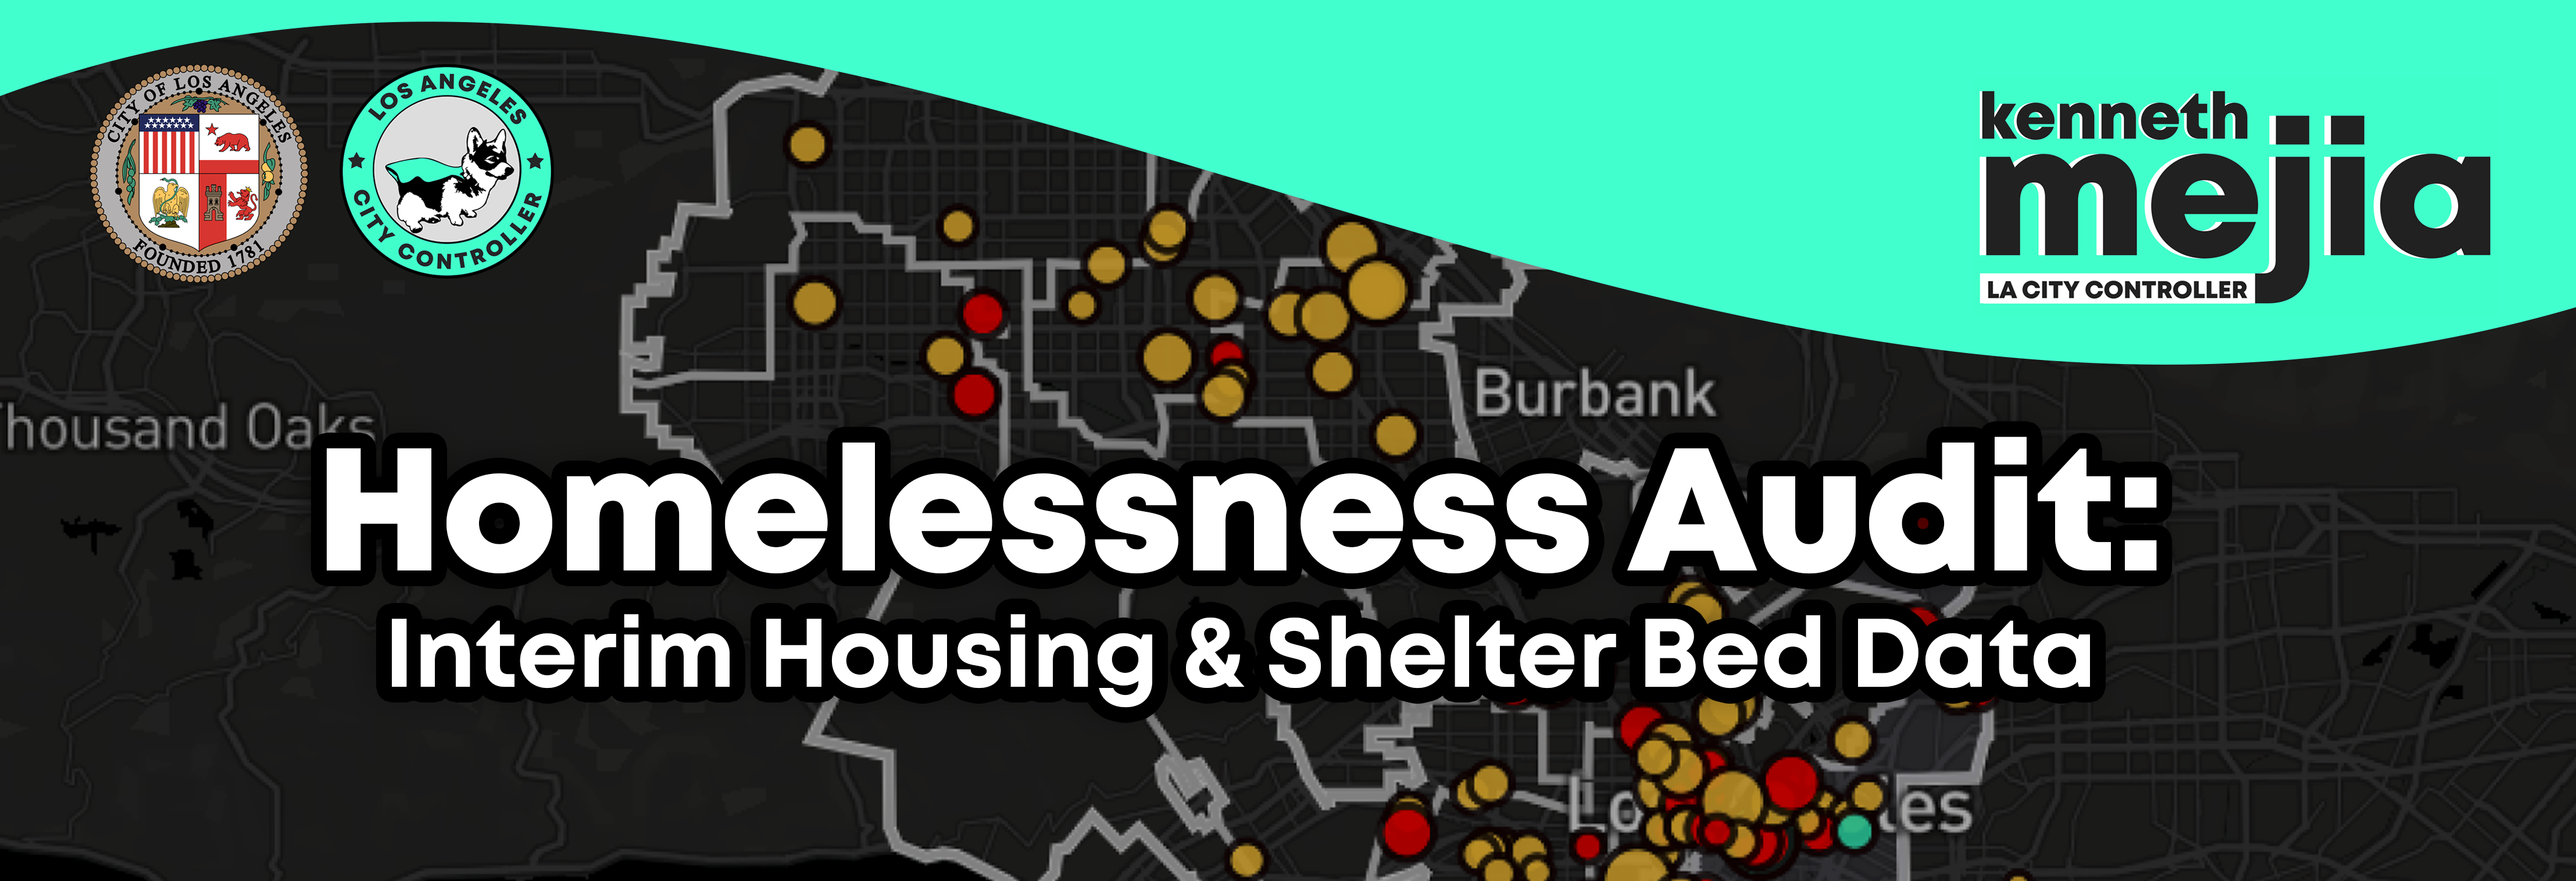 banner image of Homelessness Audit: Interim Housing & Shelter Bed Data